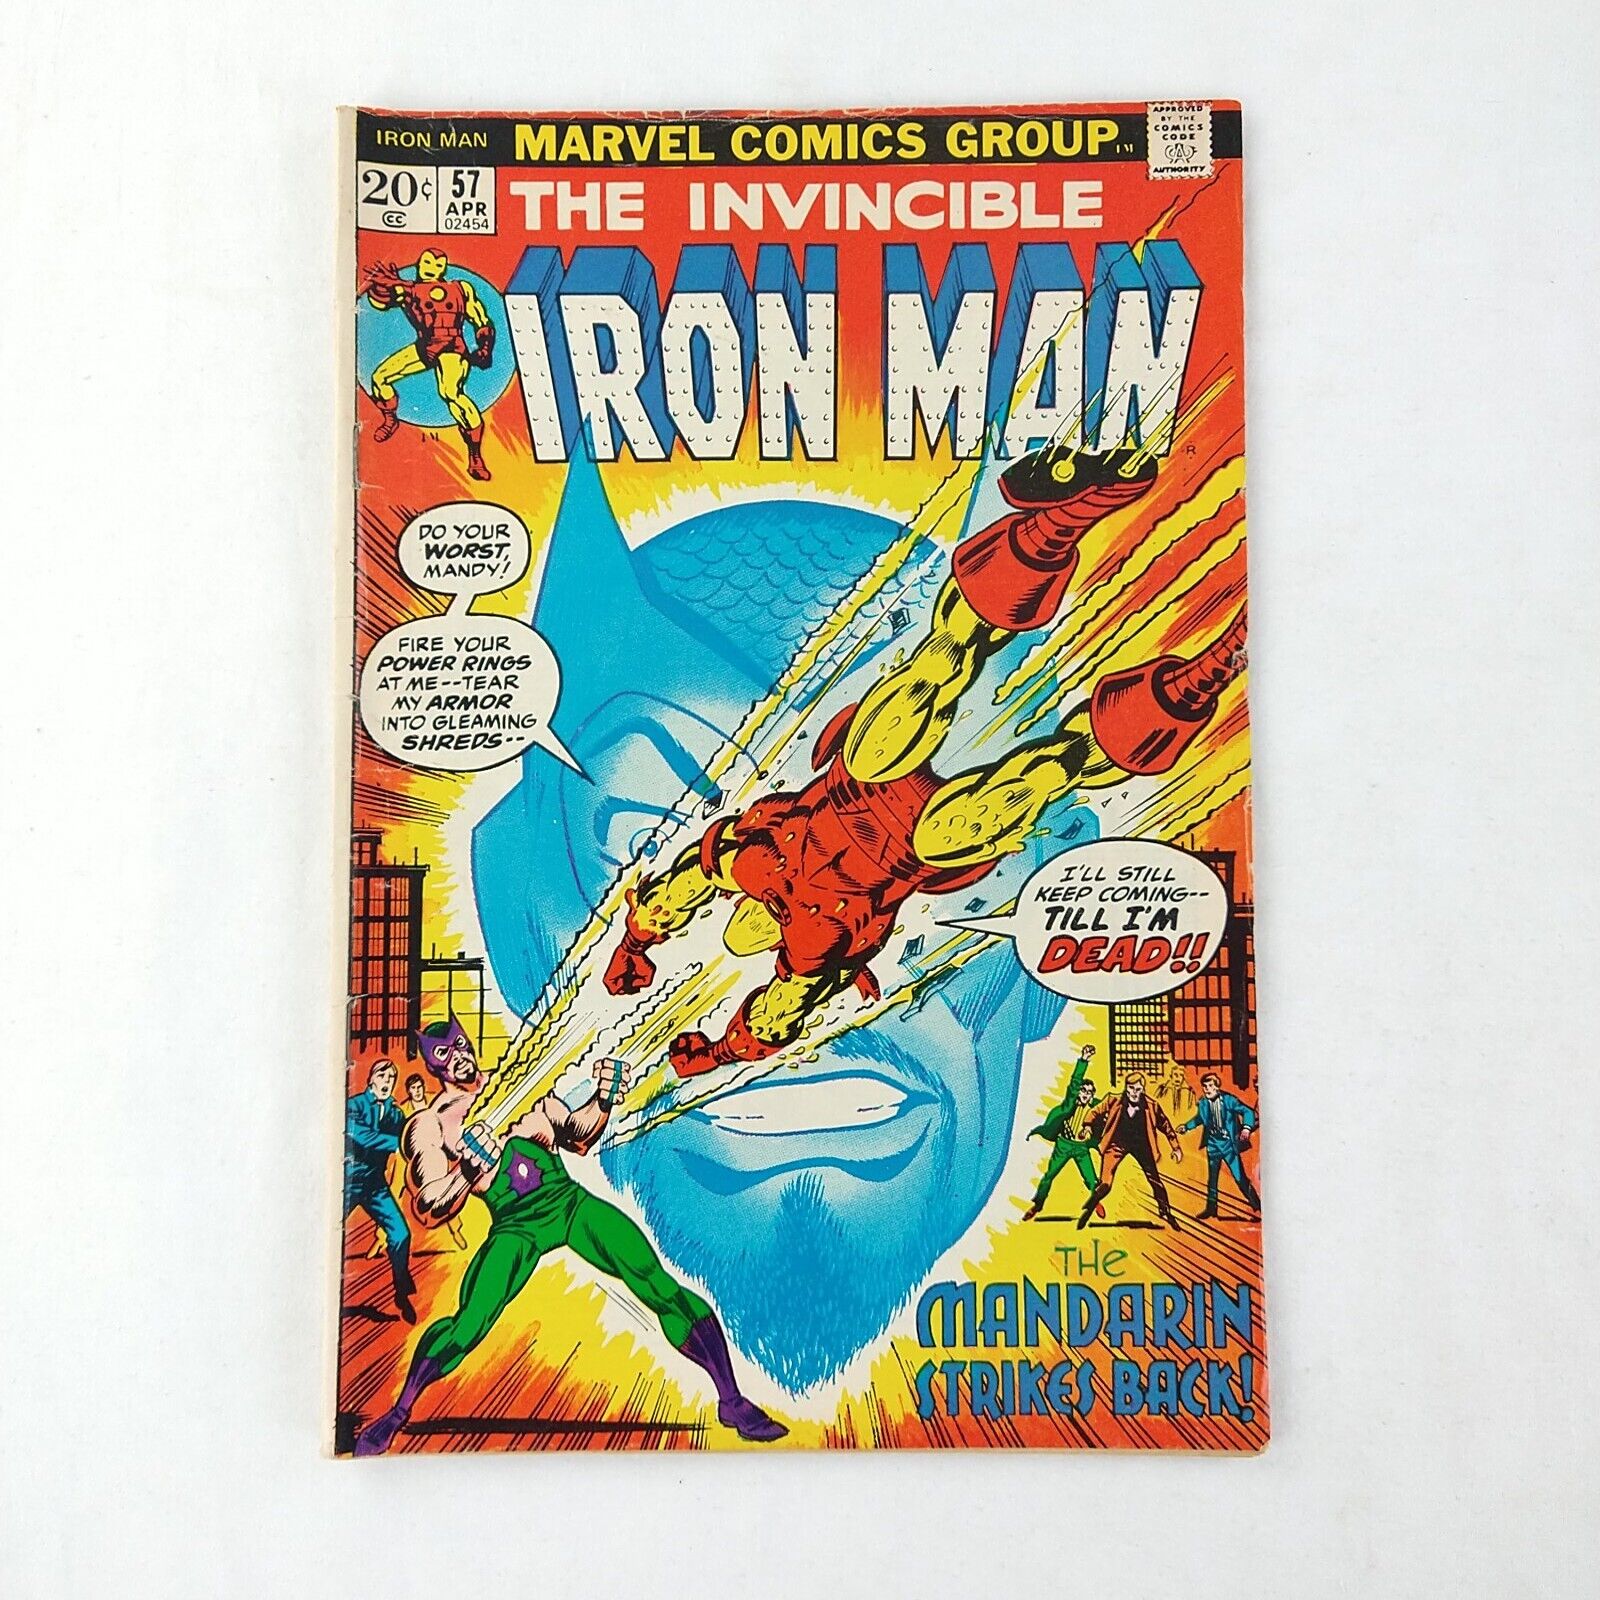 The Invincible Iron Man #57 The Mandarin Strikes Back (1972 Marvel Comics)